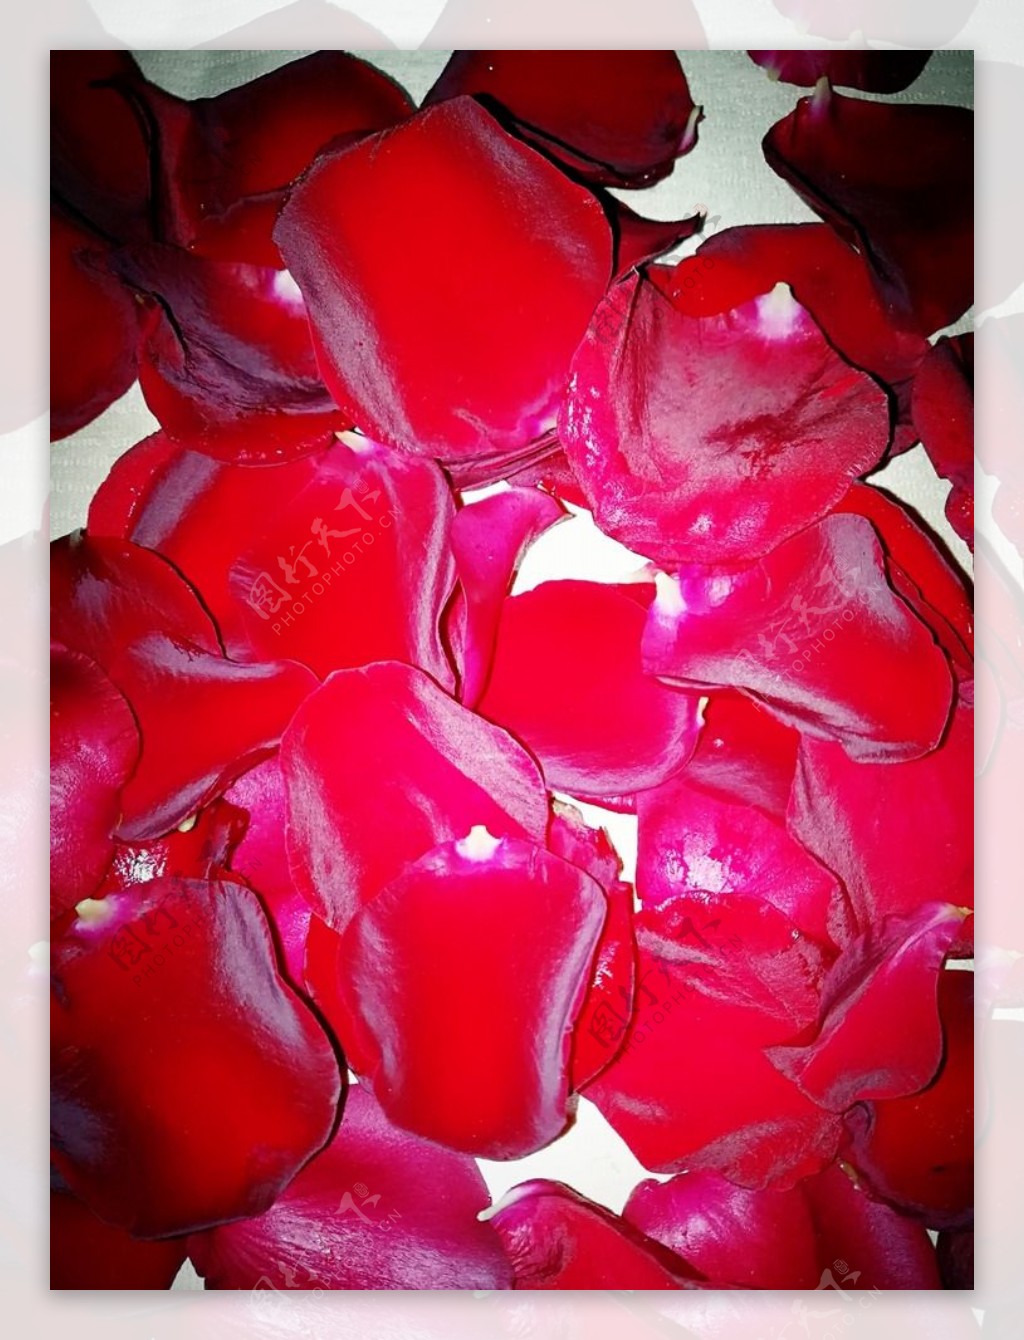 高清晰红色玫瑰花瓣壁纸